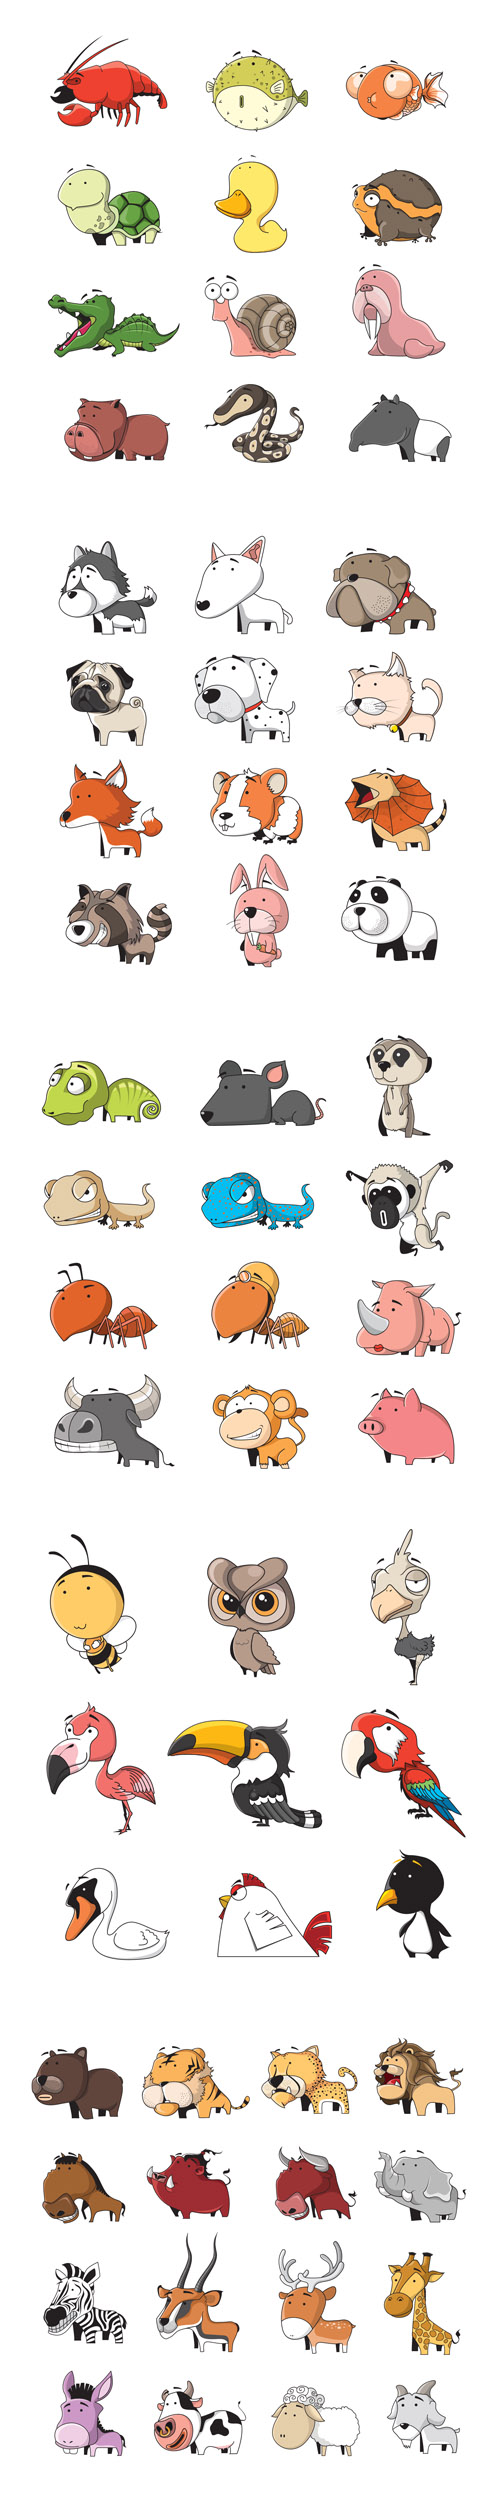 Cartoon animals set - Vectors